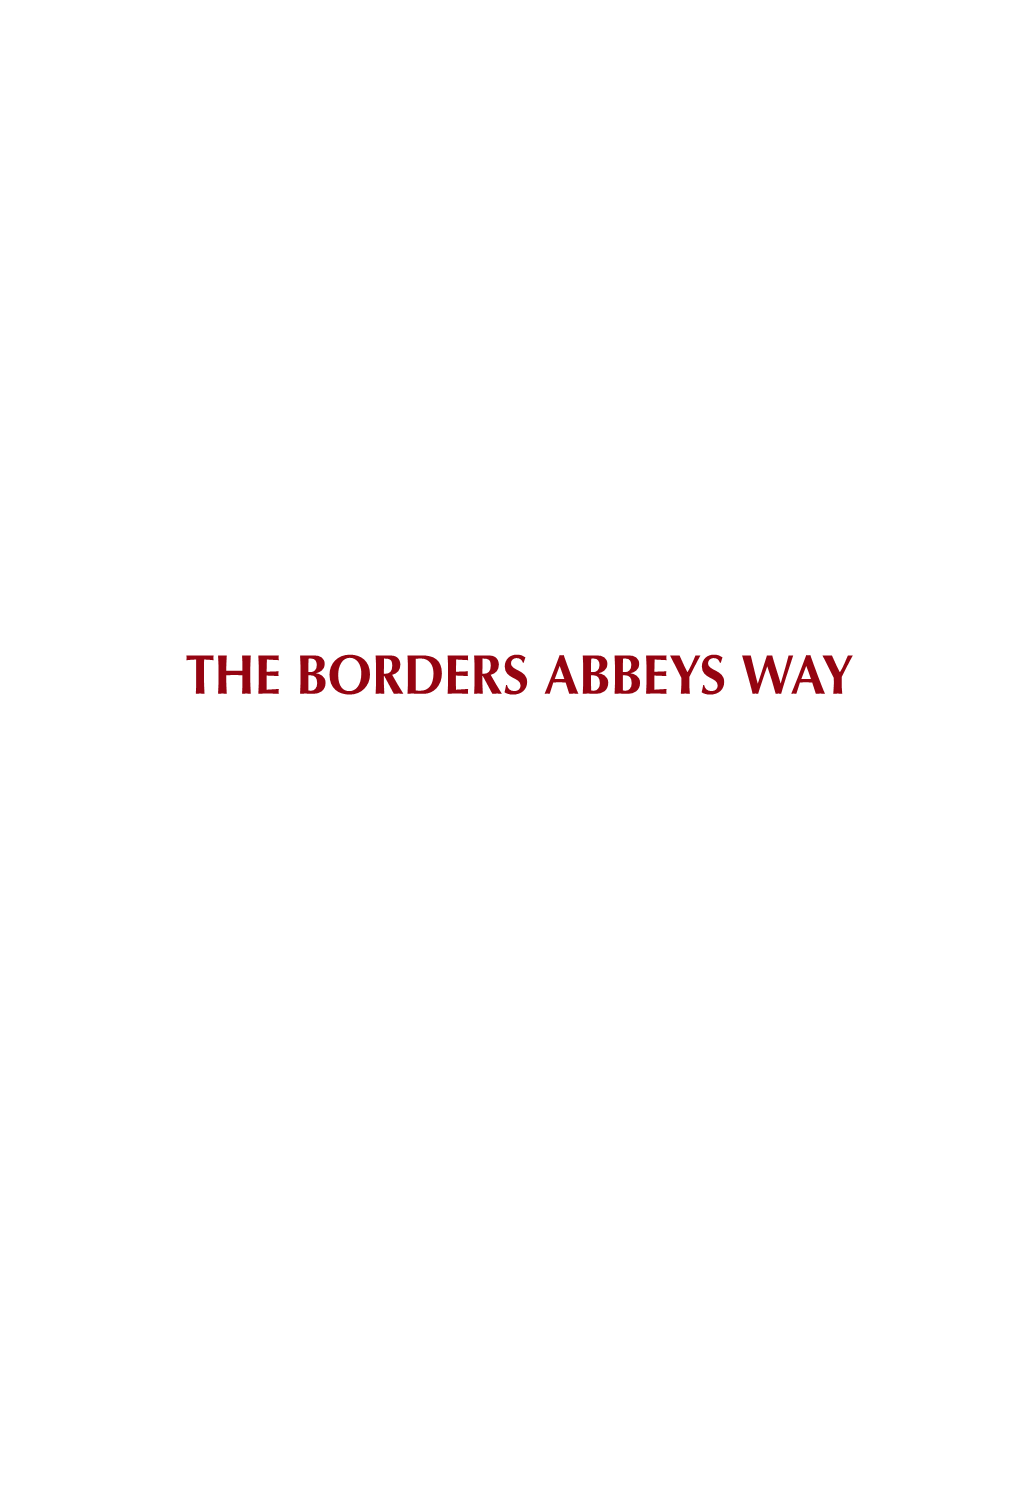 The Borders Abbeys Way the Borders Abbeys Way